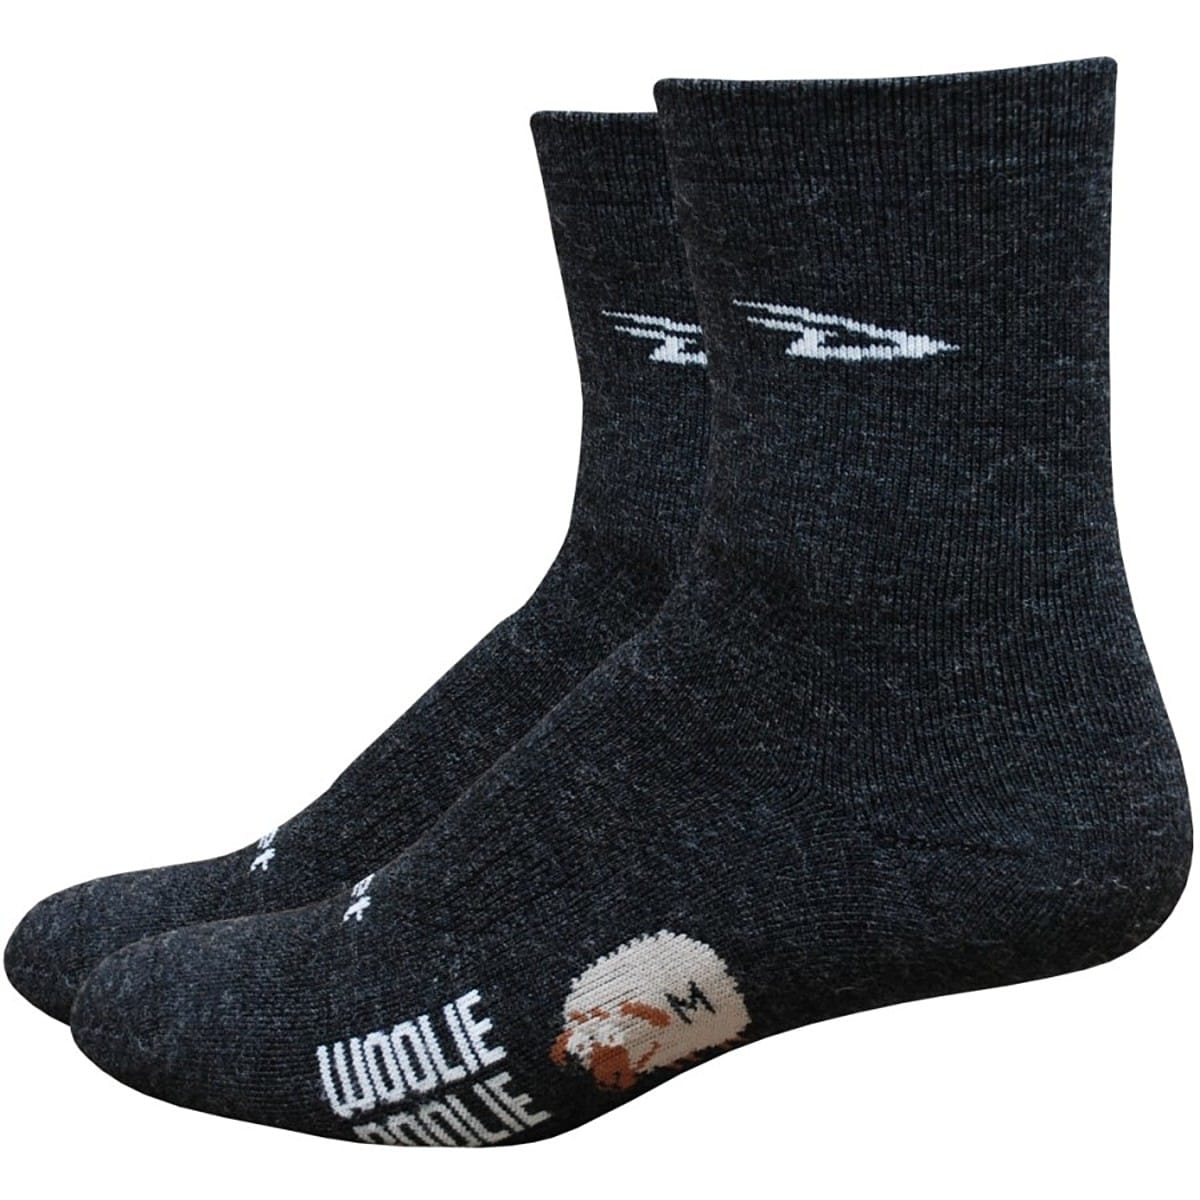 DeFeet Woolie Boolie 4in Socks - Men's